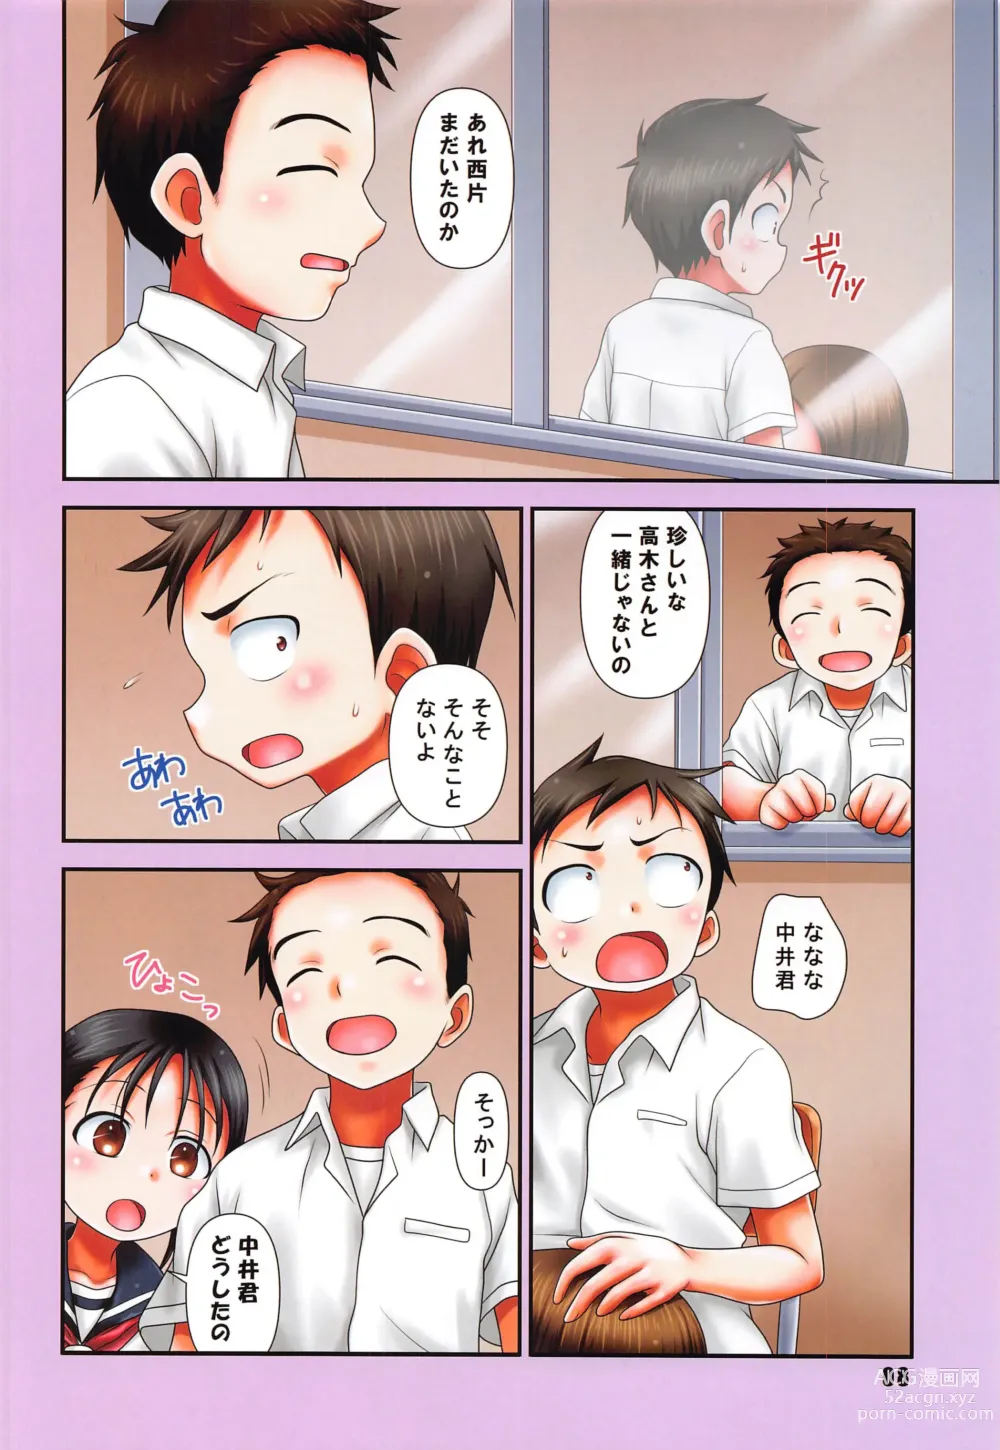 Page 7 of doujinshi GARNET color edition